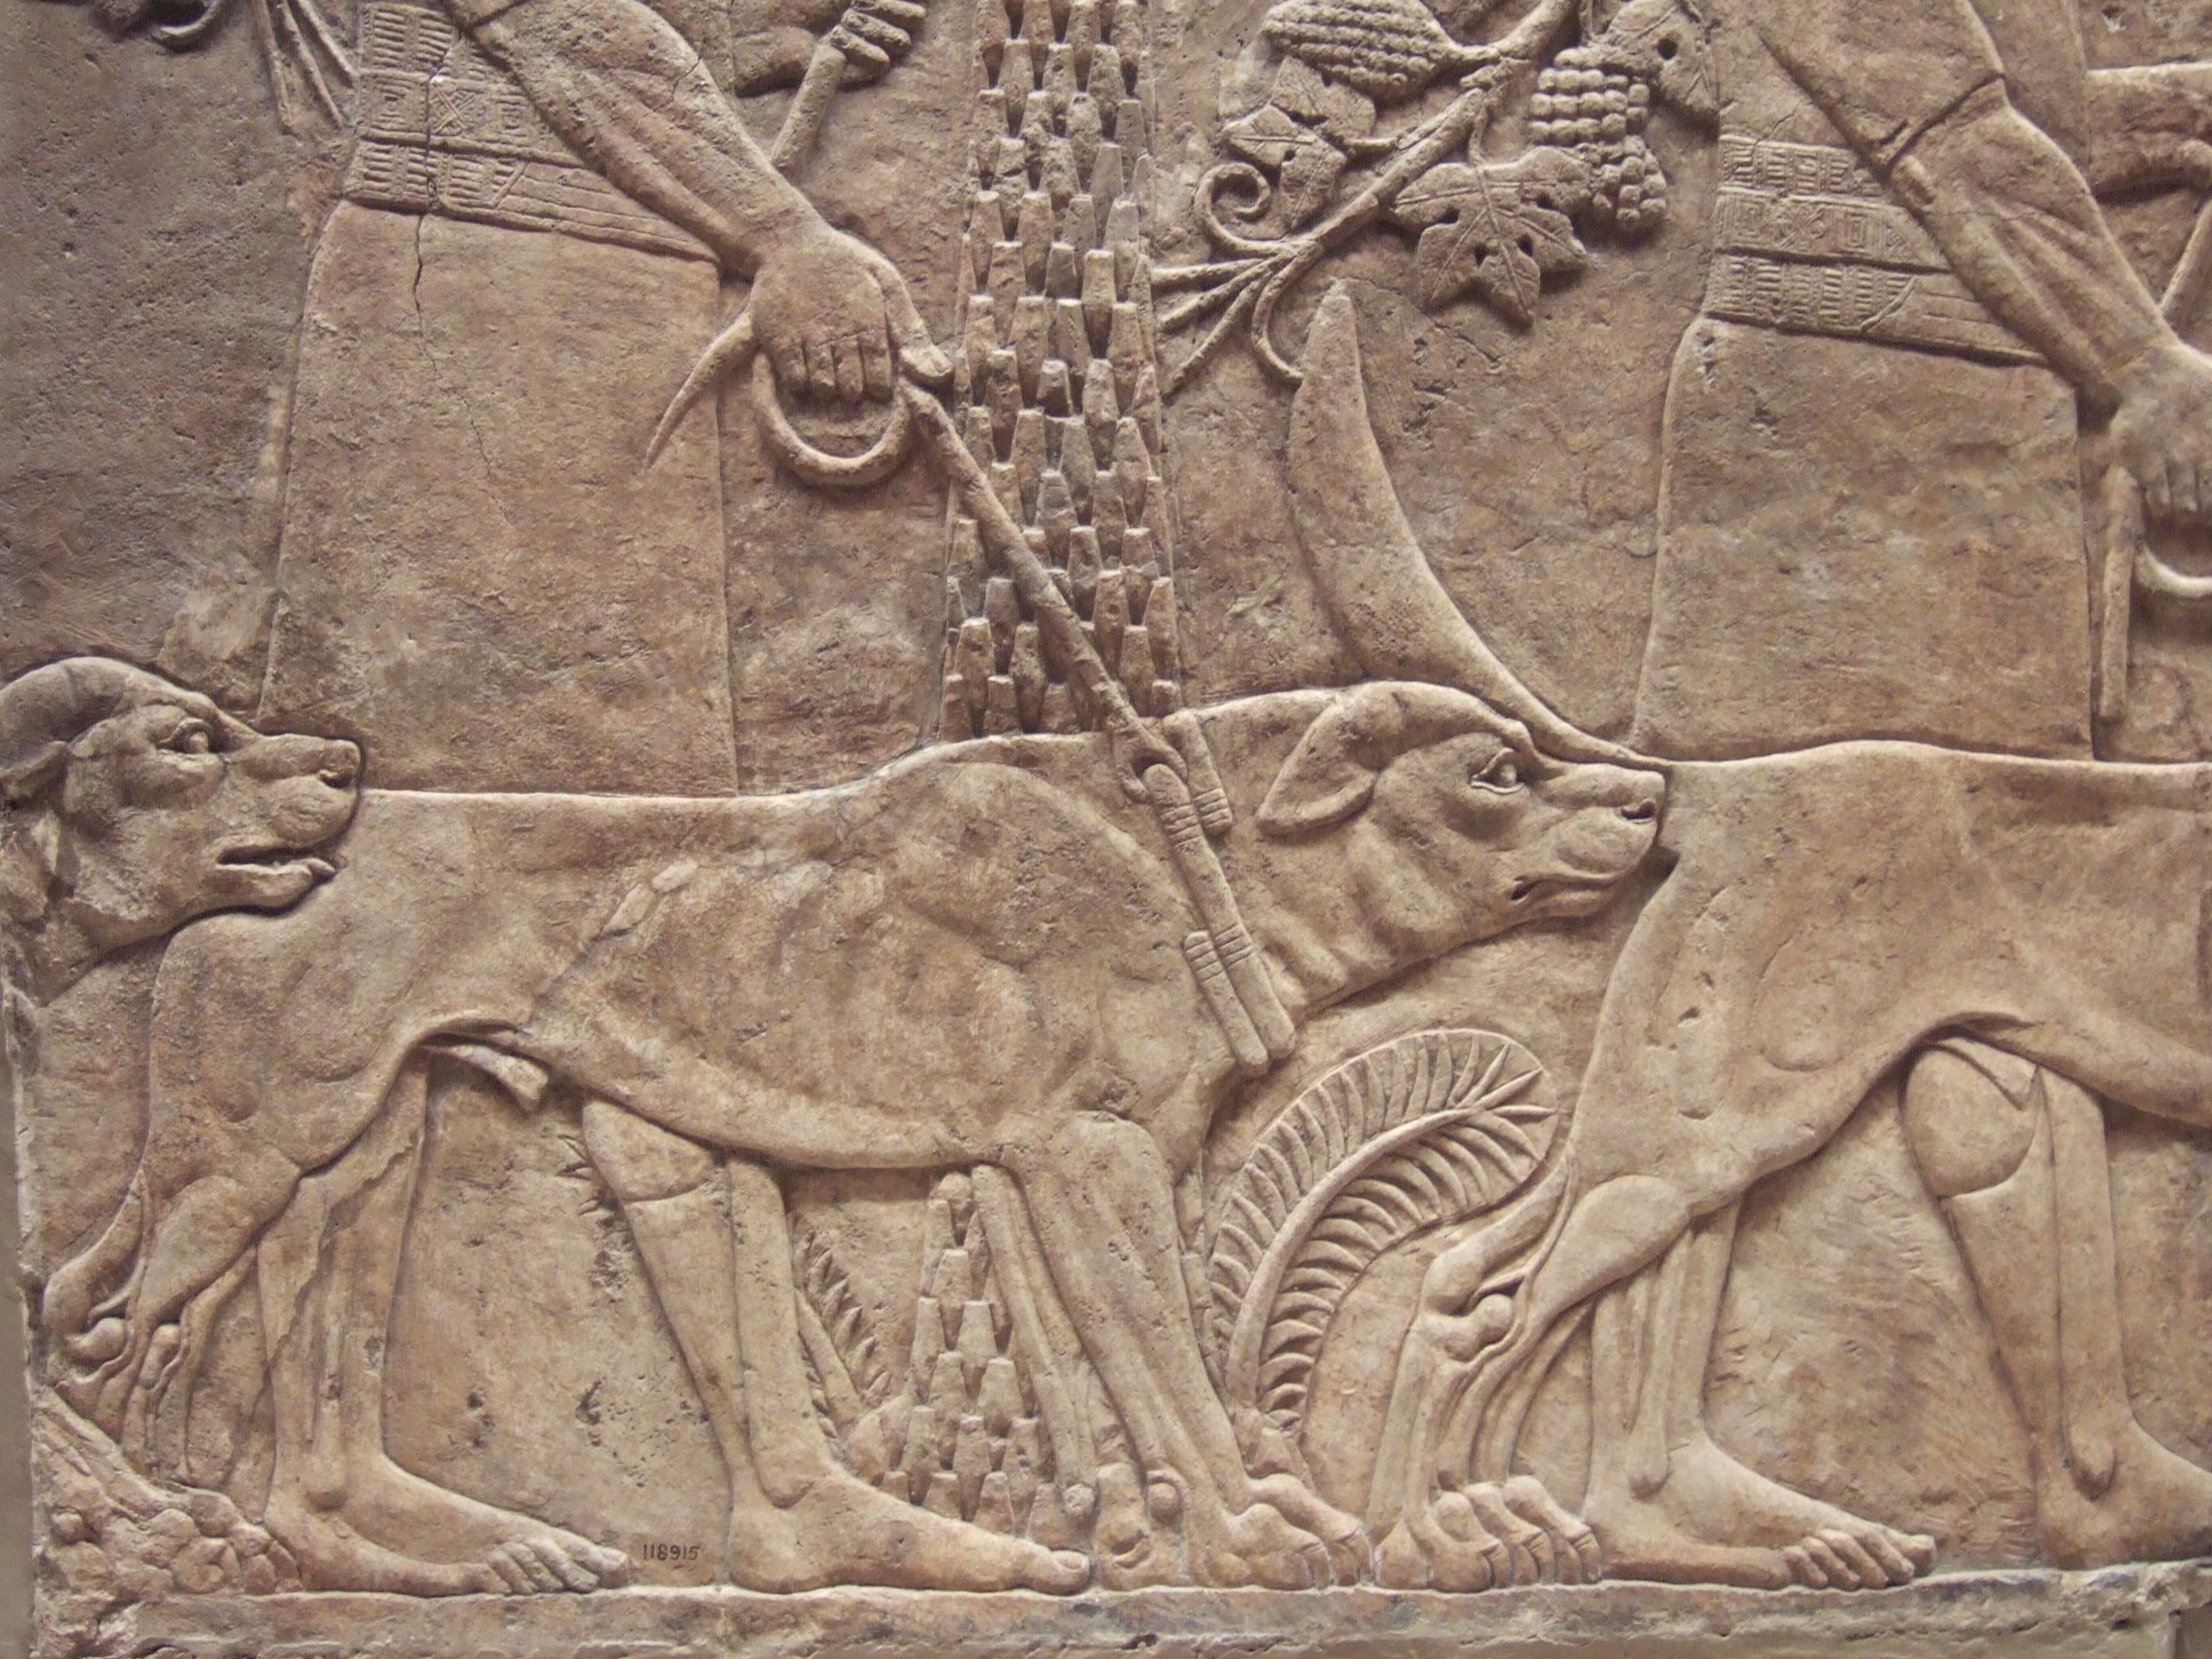 Assyrian dogs